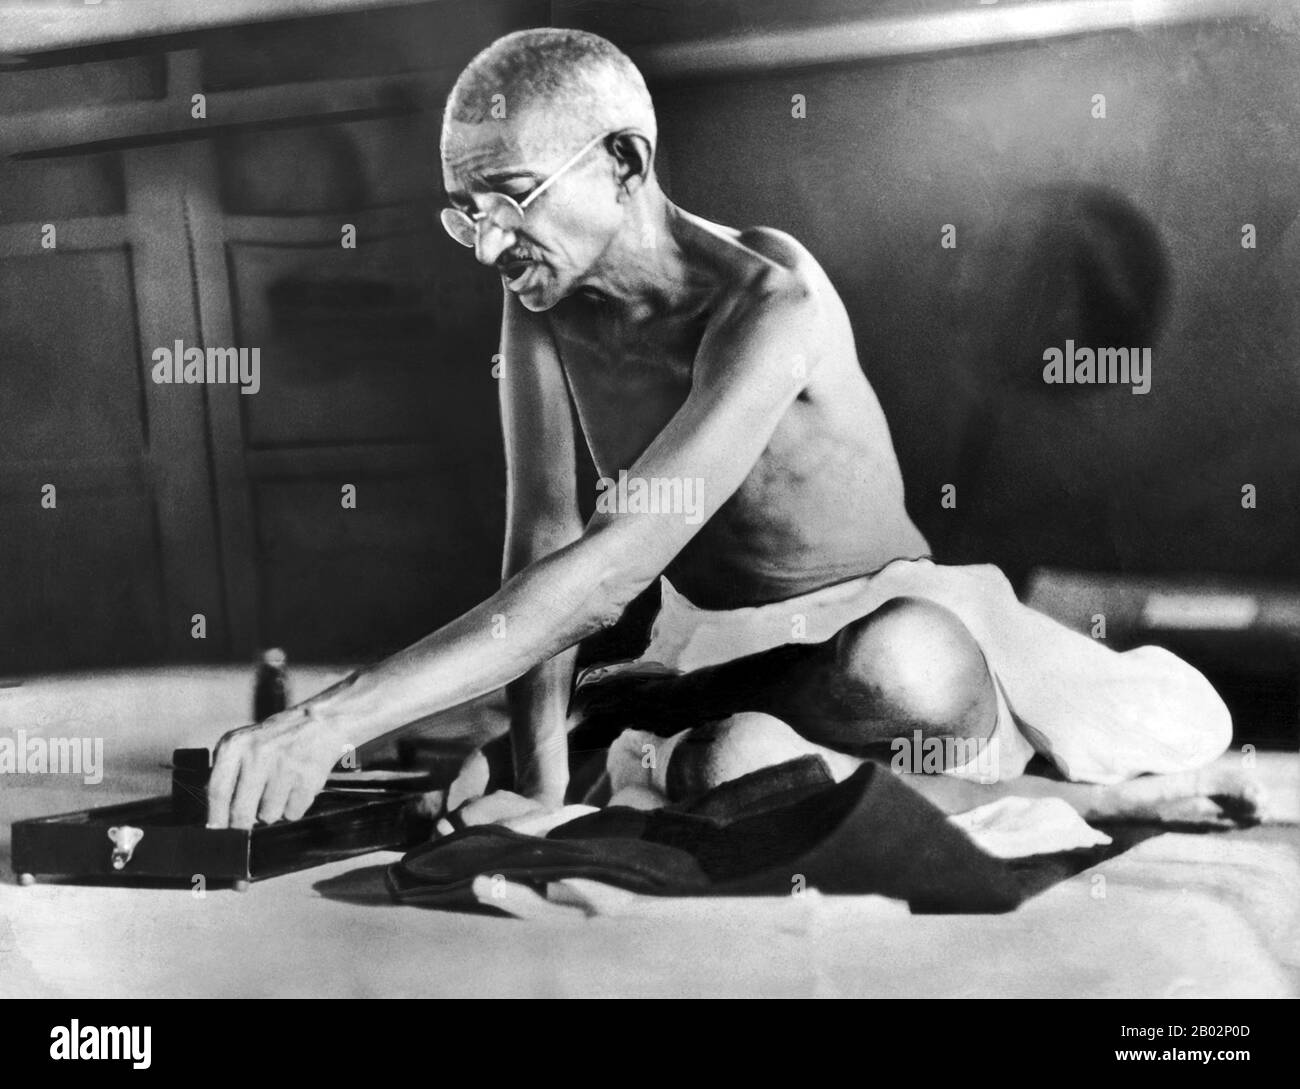 Mohandas Karamchand Gandhi (2 ottobre 1869 – 30 gennaio 1948) è stato il leader politico e ideologico preminente dell’India durante il movimento indiano per l’indipendenza. Fu il primo a satyagraha. Questo è definito come resistenza alla tirannia attraverso la disobbedienza civile di massa, una filosofia fondata saldamente sull'ahimsa, o totale non-violenza. Questo concetto ha aiutato l'India ad ottenere l'indipendenza e ha ispirato i movimenti per i diritti civili e la libertà in tutto il mondo. Gandhi è spesso chiamato Mahatma Gandhi o 'Grande anima', un primo onorifico applicato a lui da Rabindranath Tagore. In India è anche chiamato Bapu (Guj Foto Stock